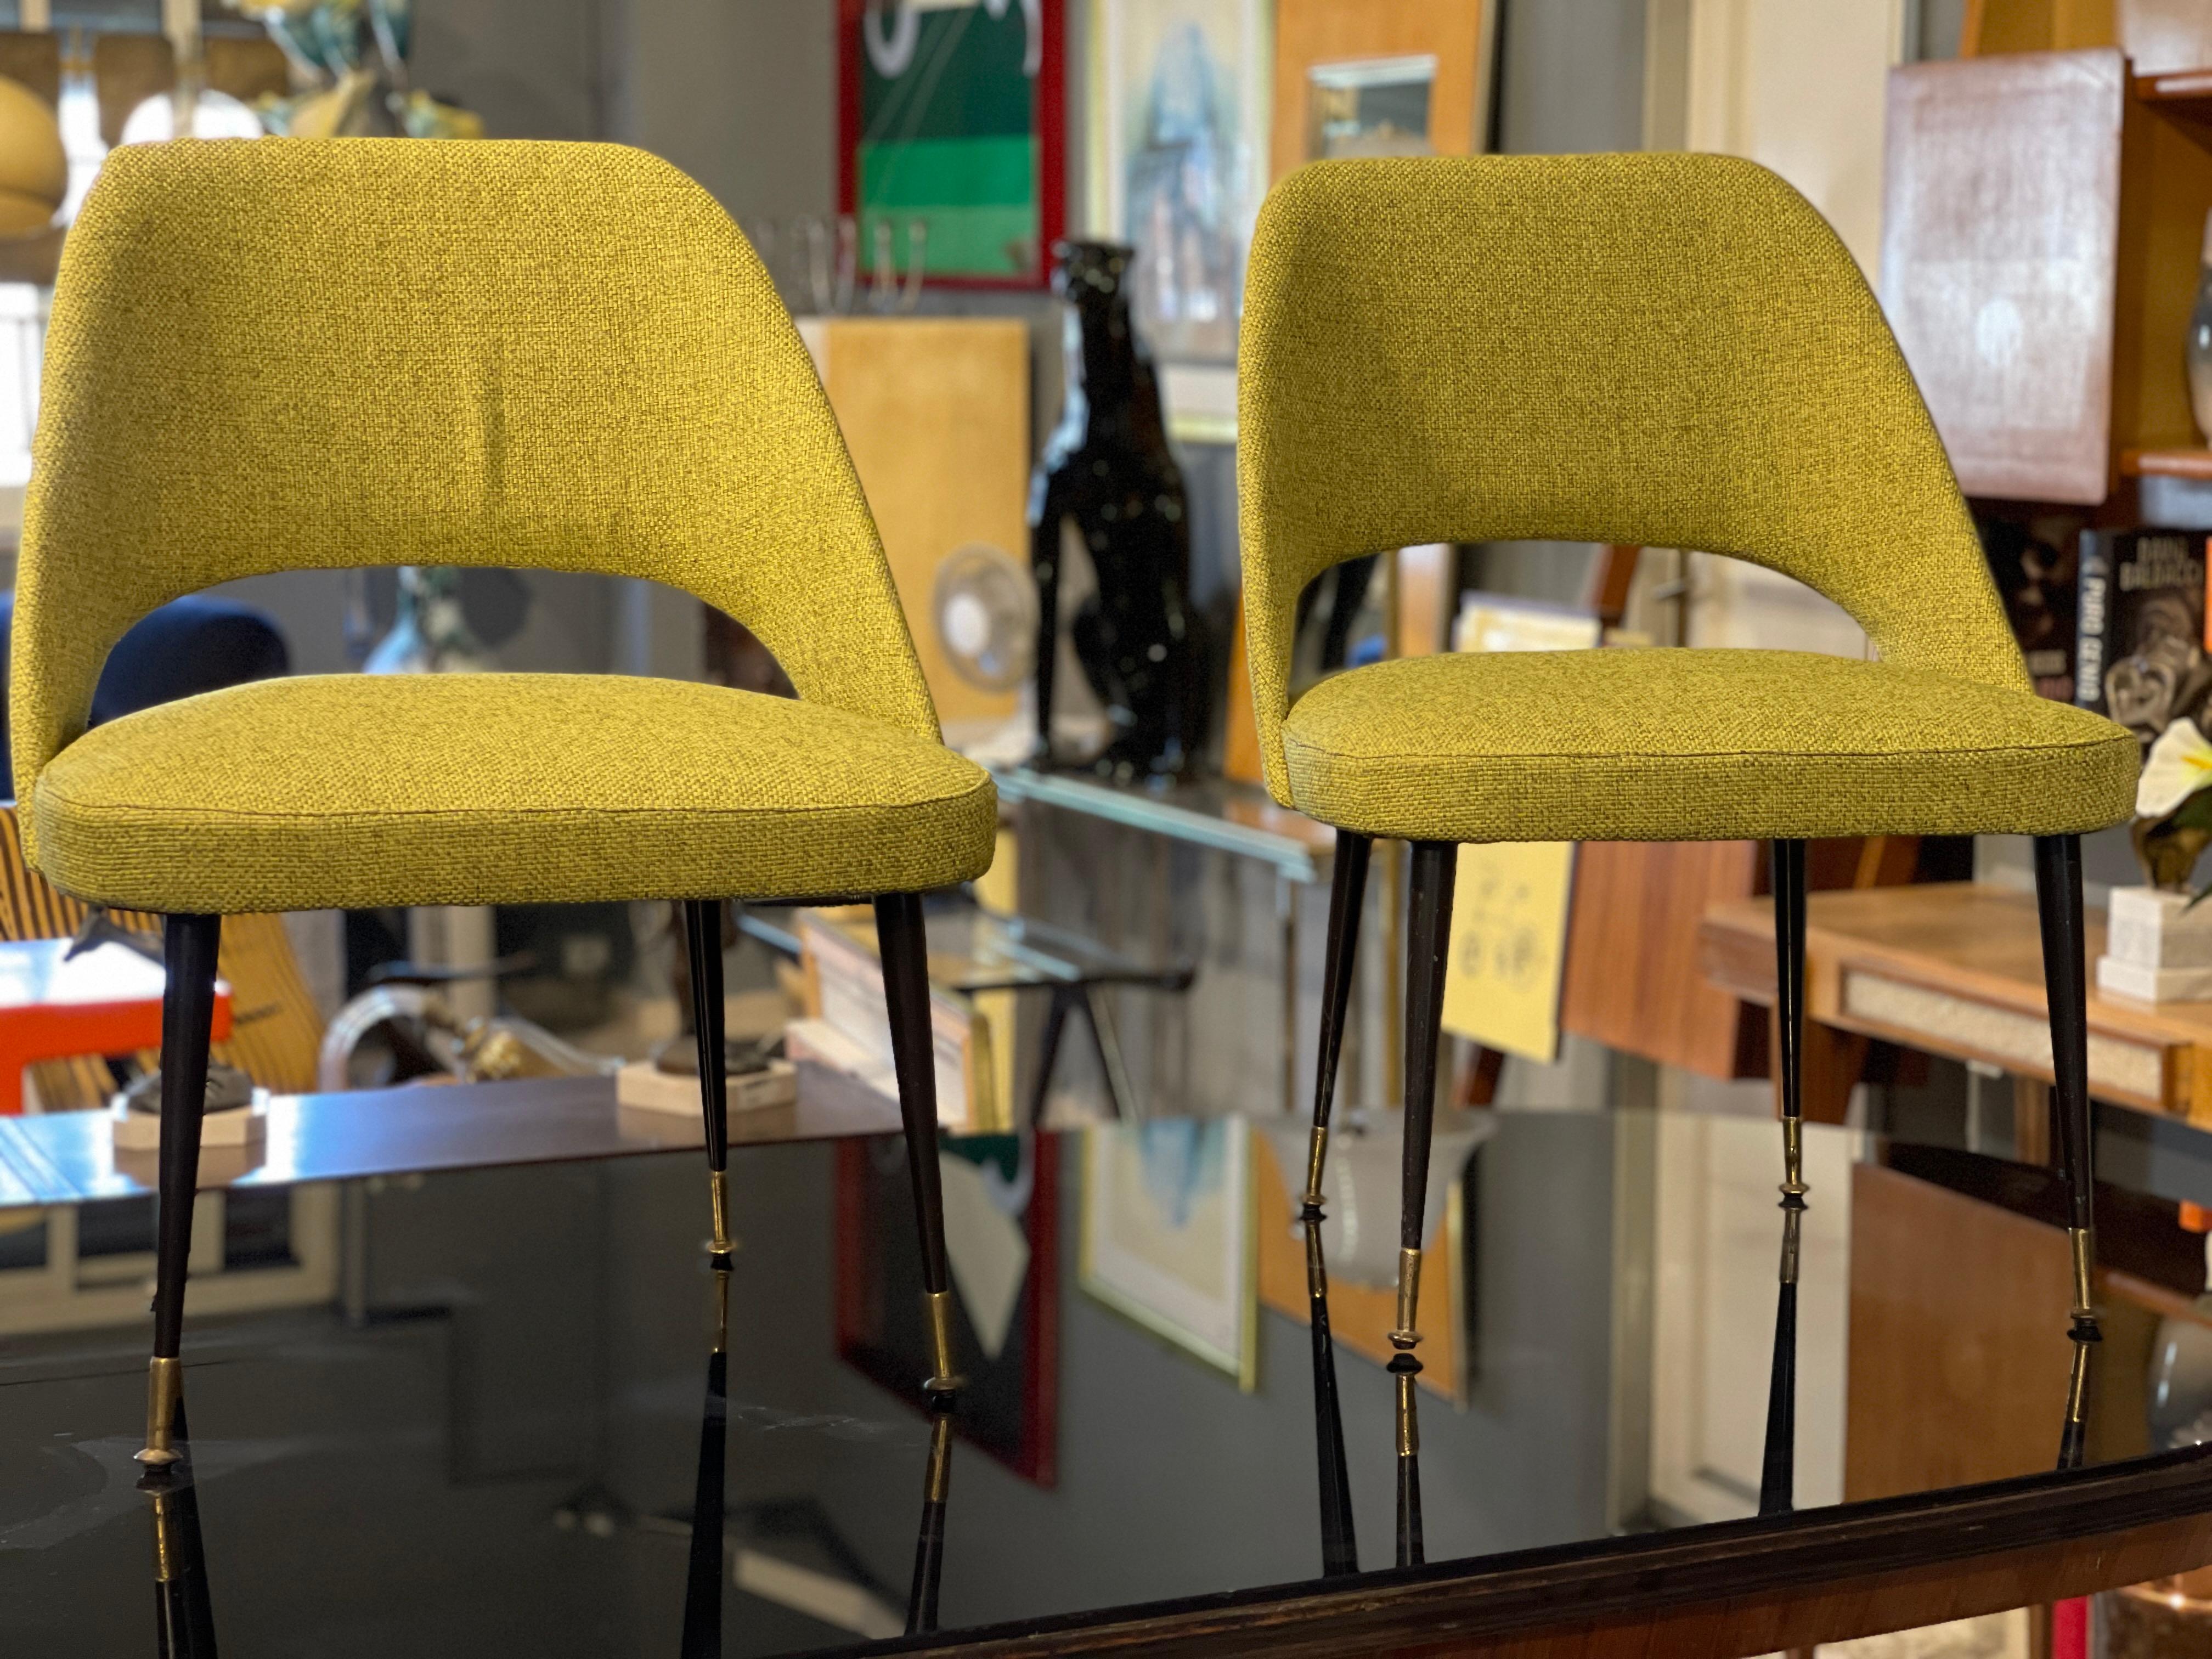 Zwei überarbeitete Sessel, italienische Produktion der 1960er Jahre, die der Designfirma RIMA zugeschrieben werden.